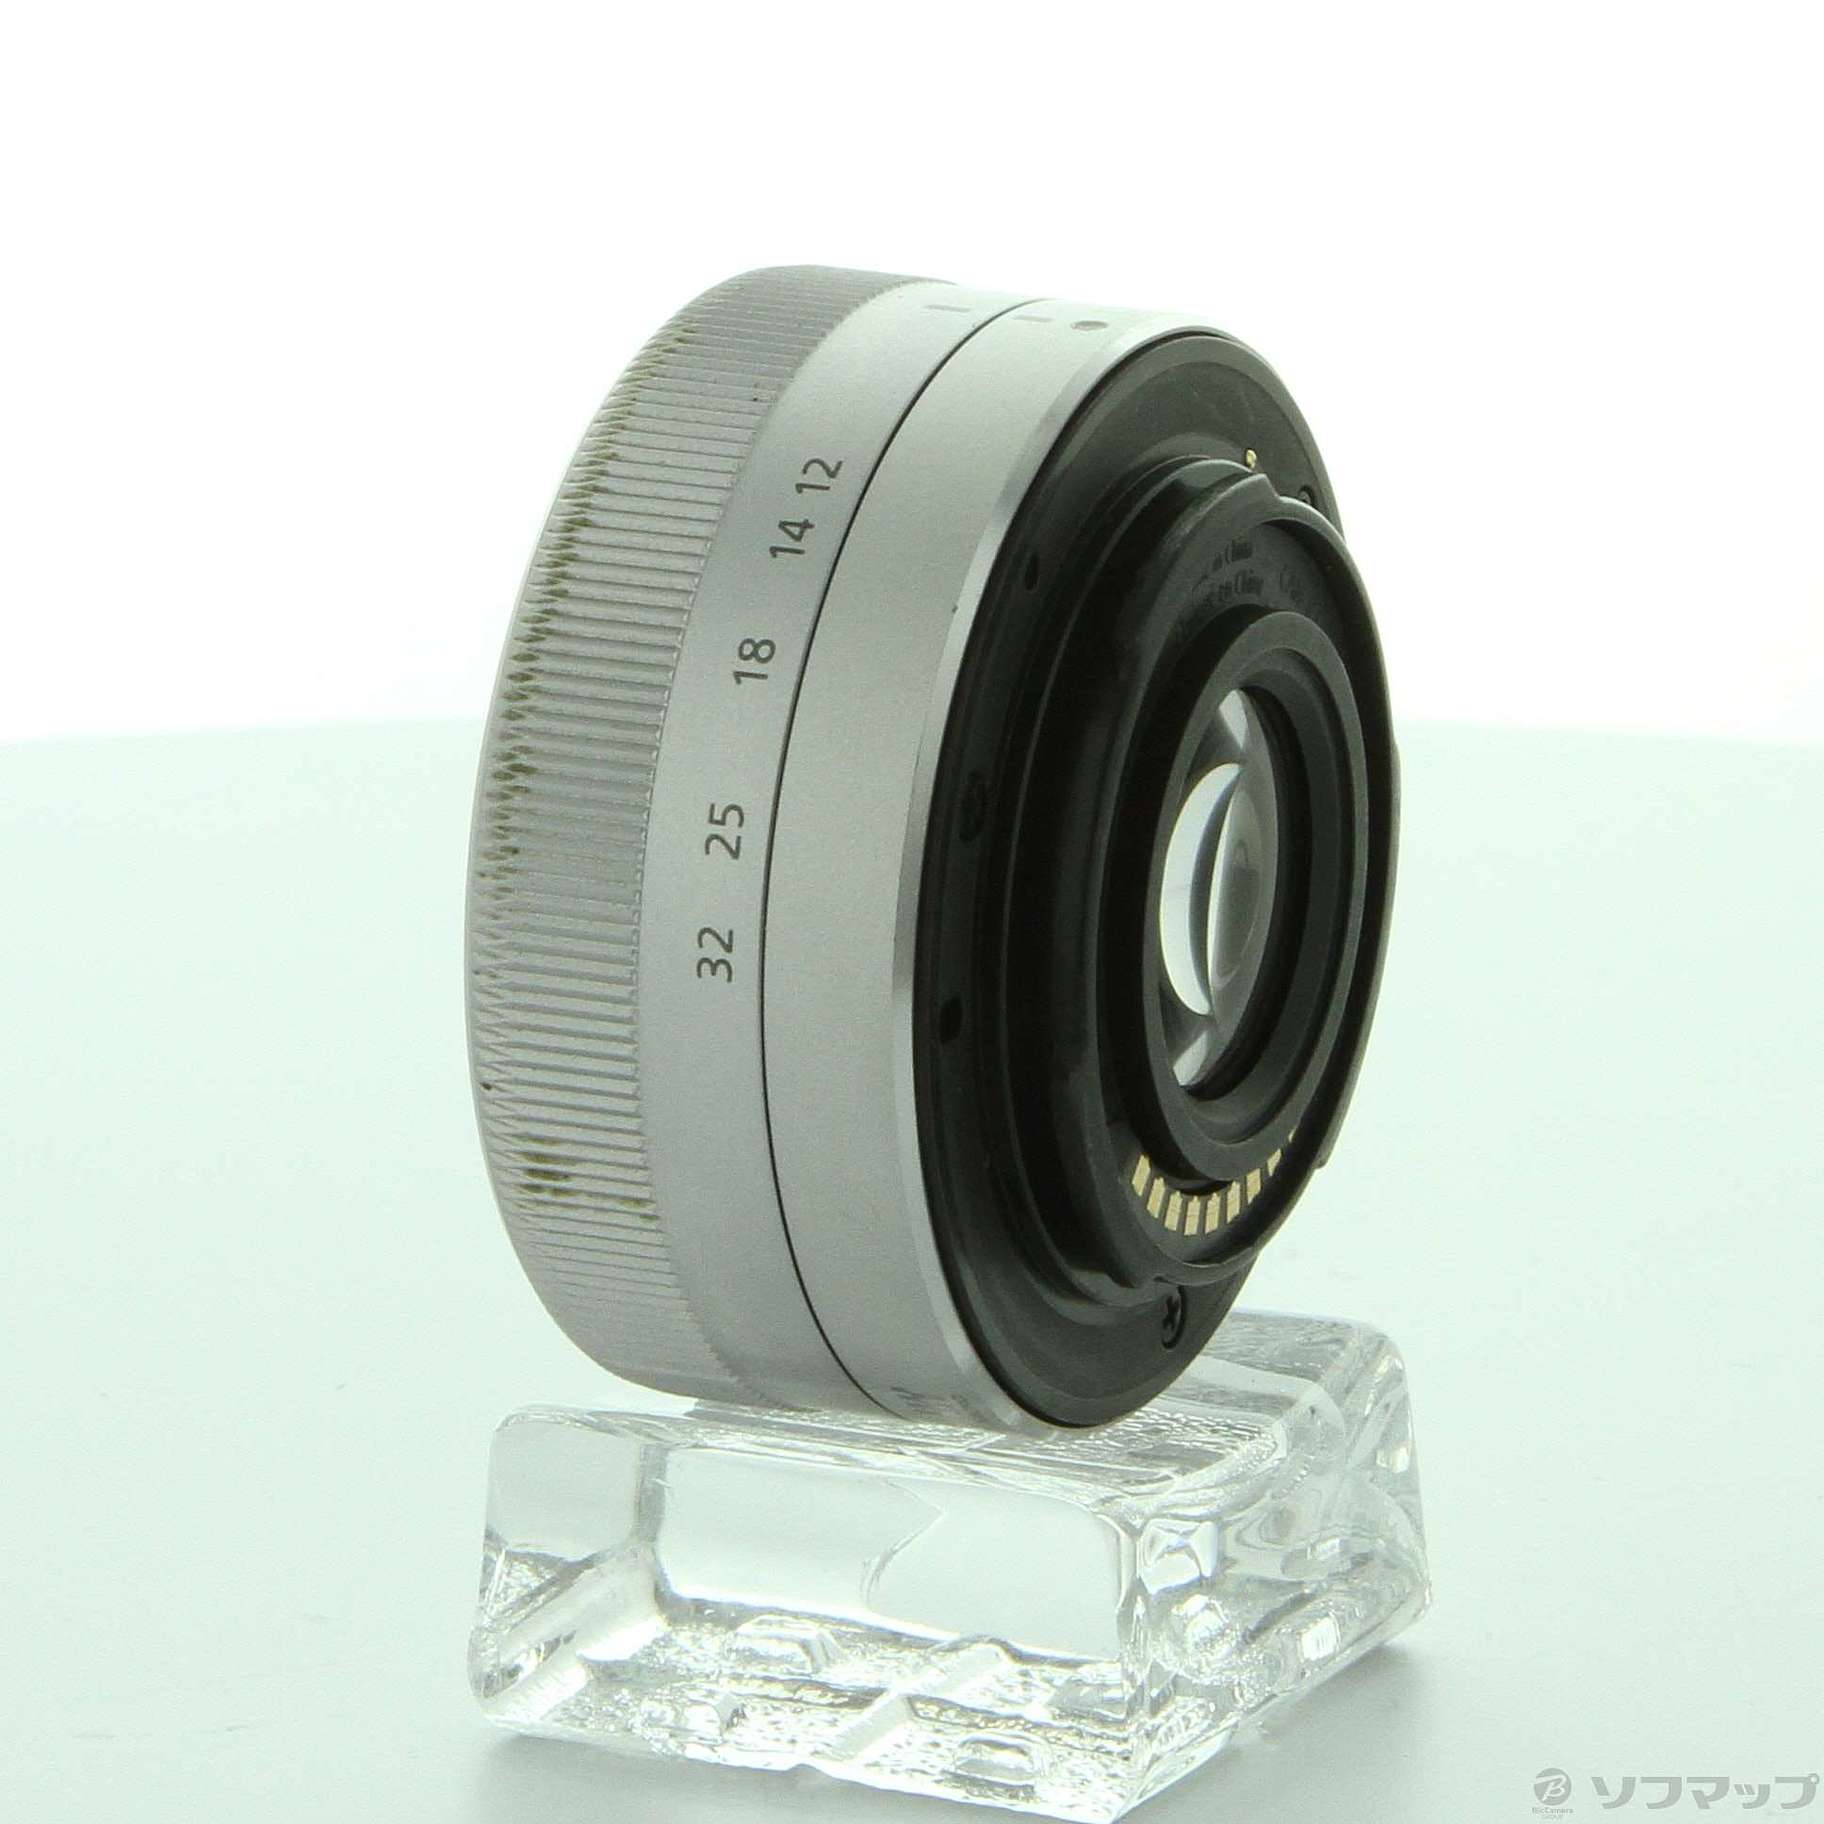 セール対象品 LUMIX G VARIO 12-32mm／F3.5-5.6 ASPH (H-FS12032-S) (レンズ)